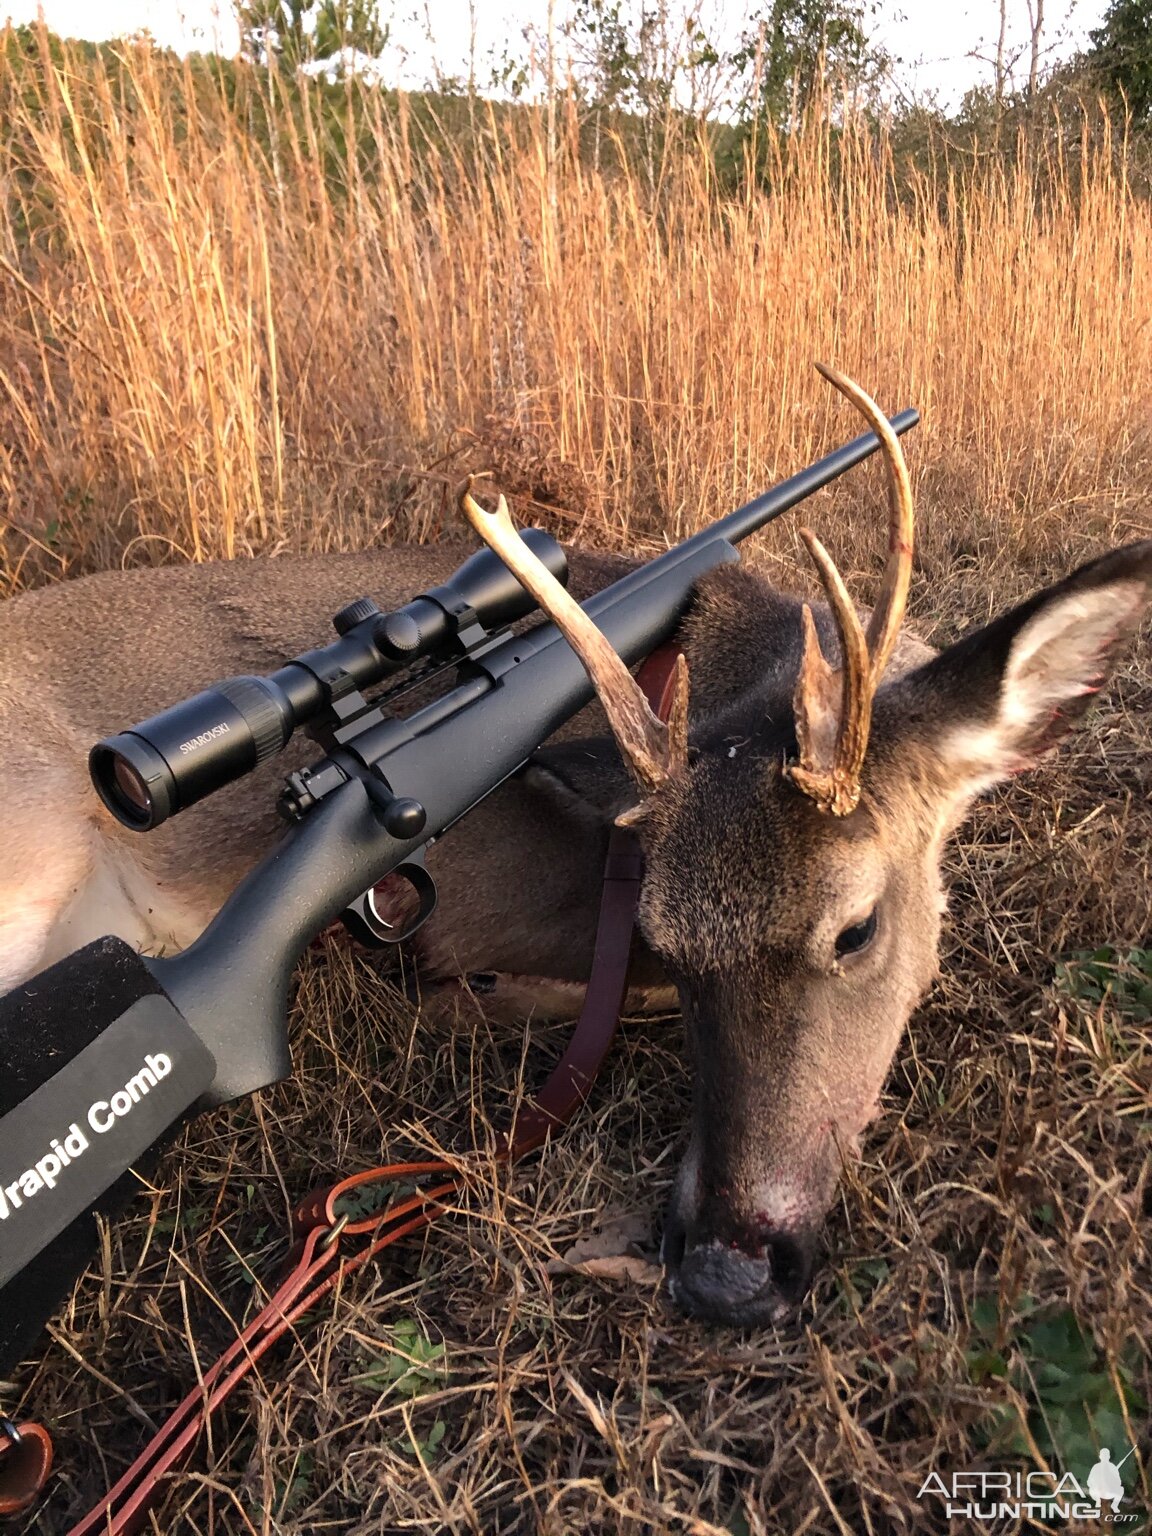 USA Hunting Deer